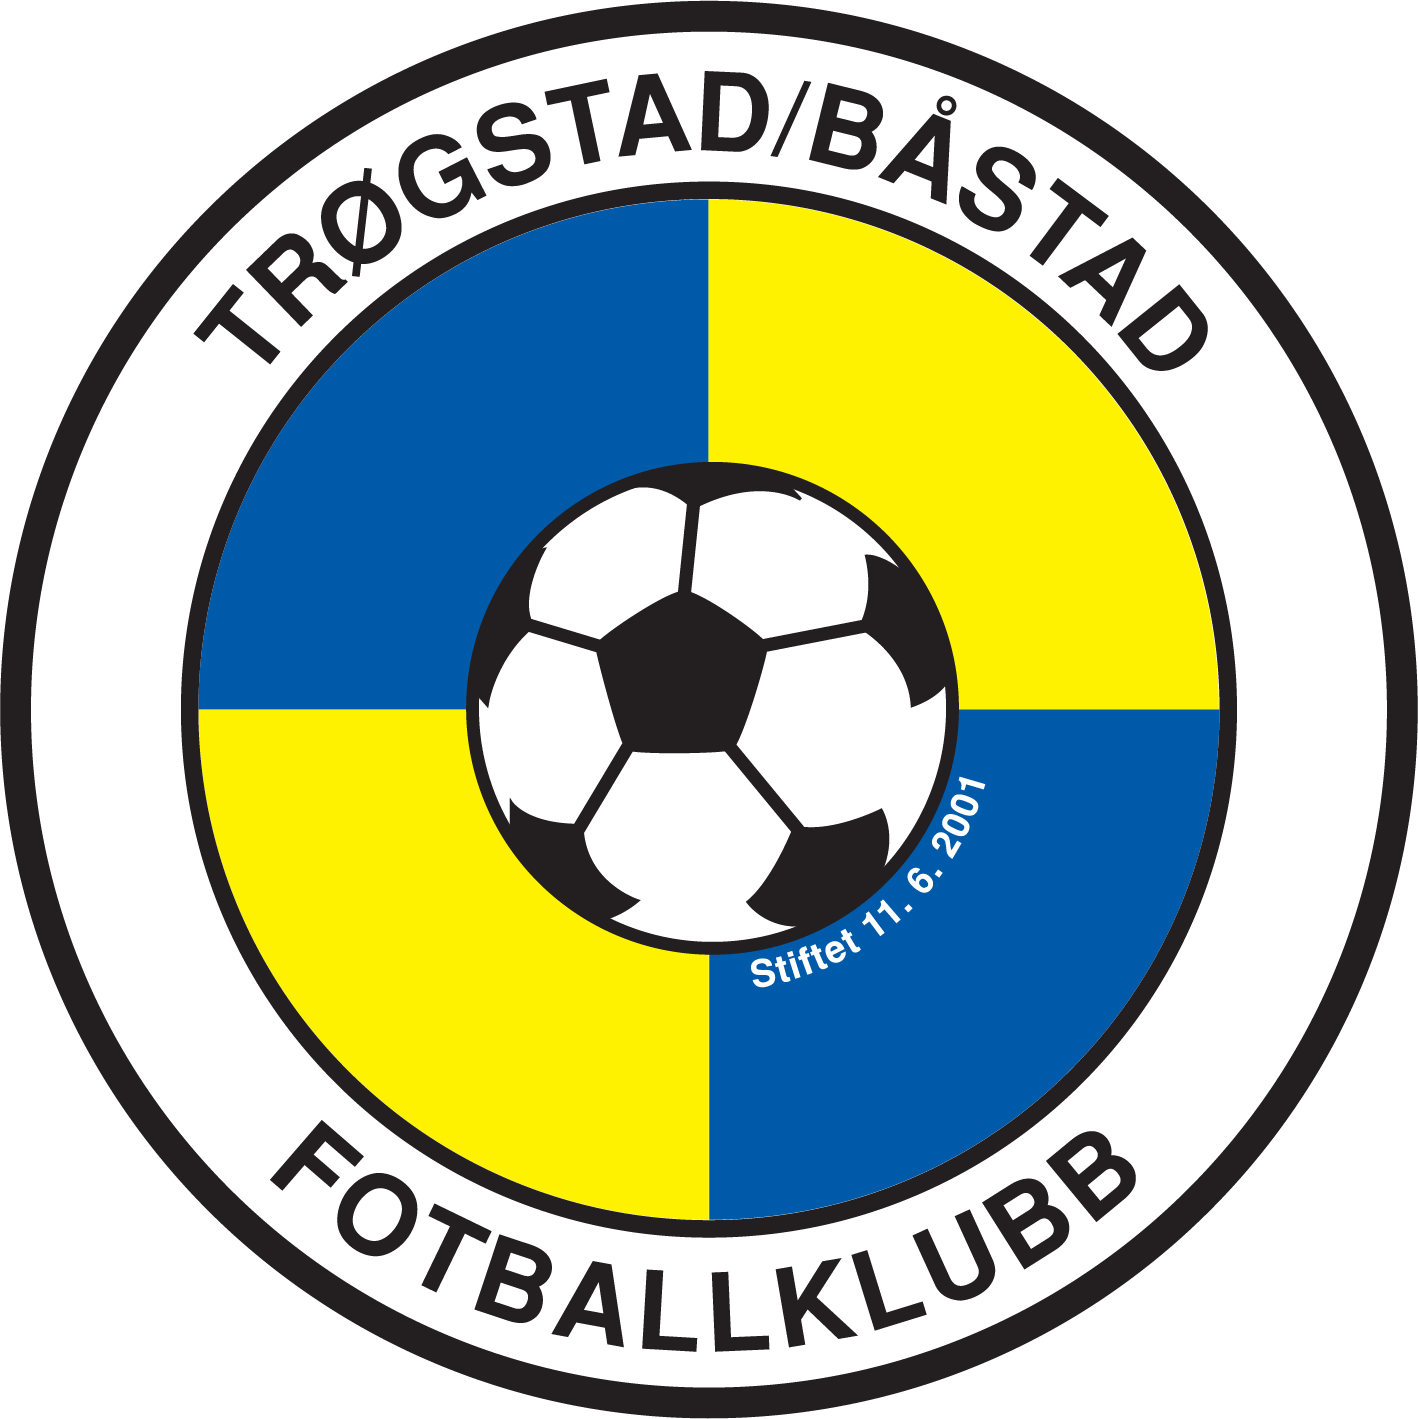 Logo Trøgstad/Båstad Fotballklubb